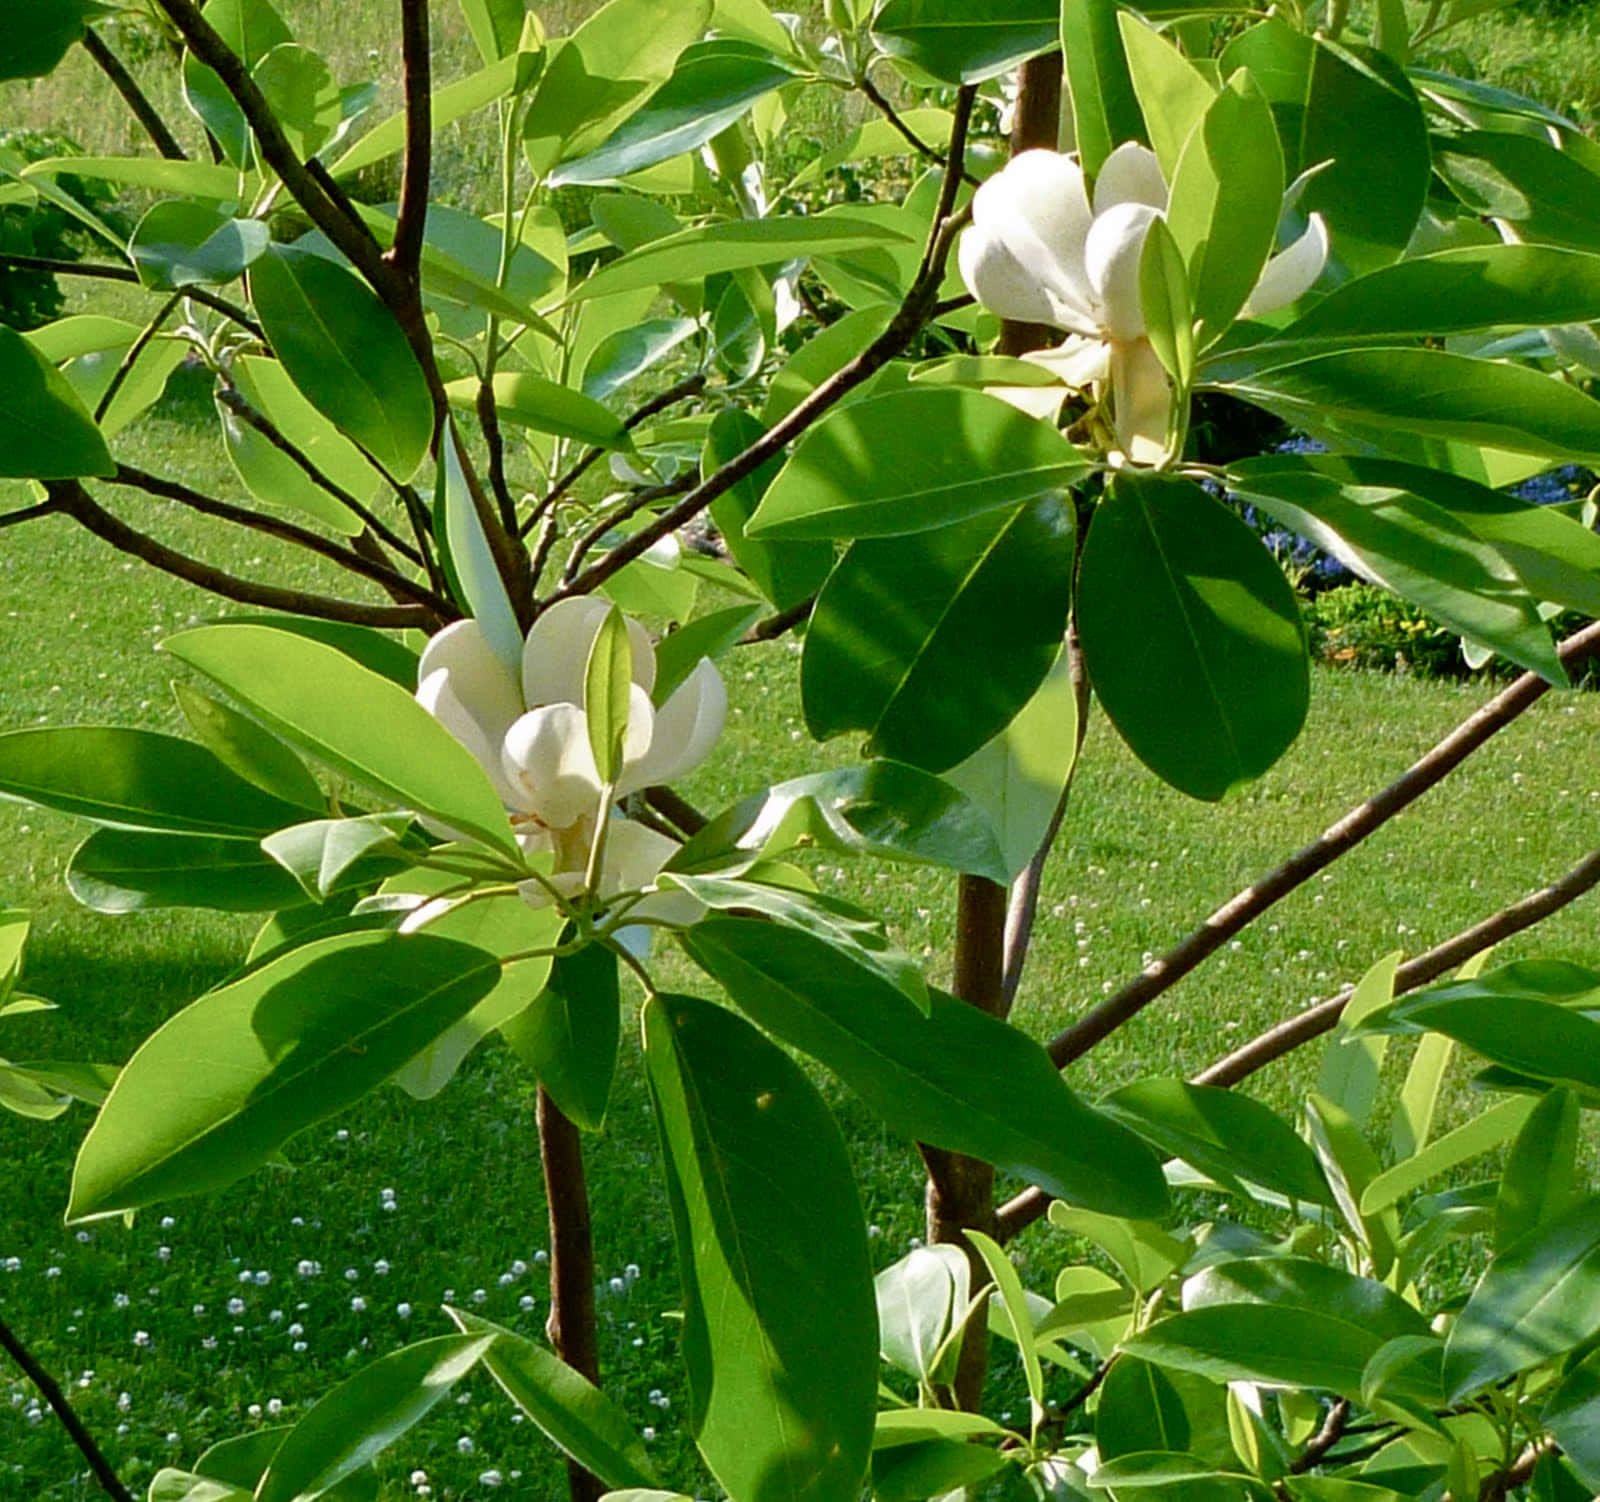 Endelikat Magnolia Blomma I Eftermiddagsljus.